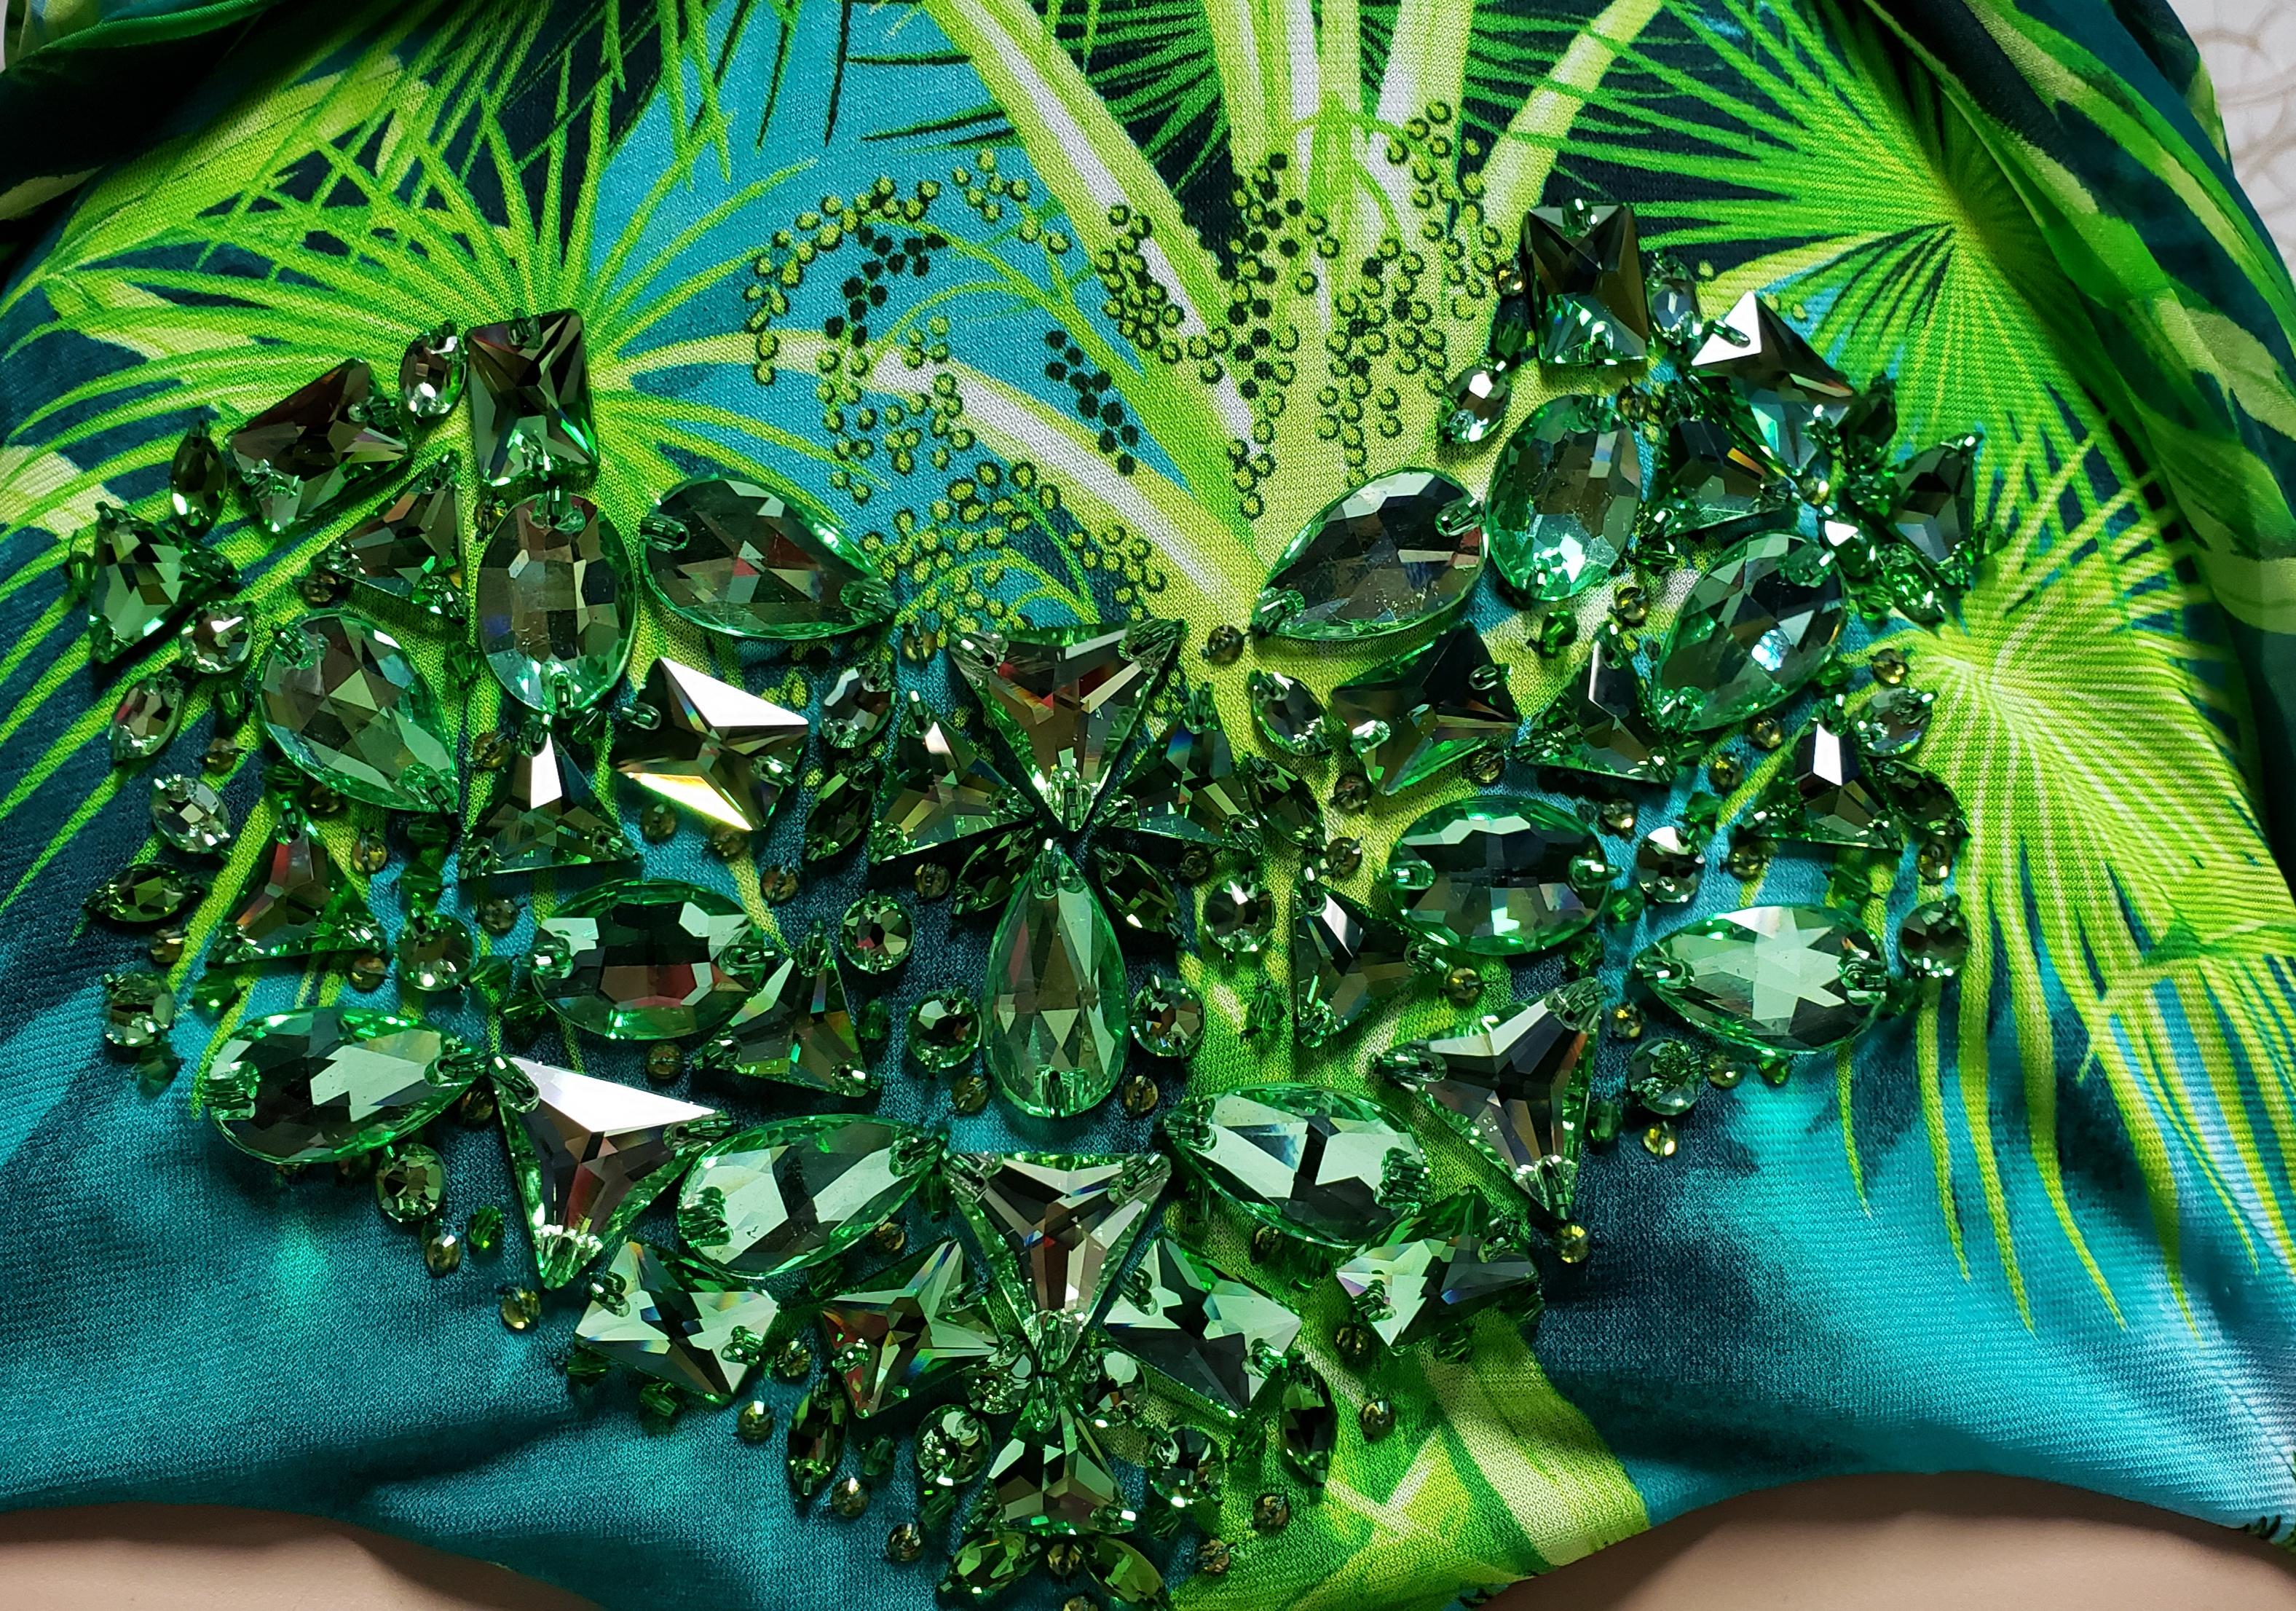 S/S 2020 Versace Embellished Jungle print Finalee Dress as seen on Jen Lopez 1